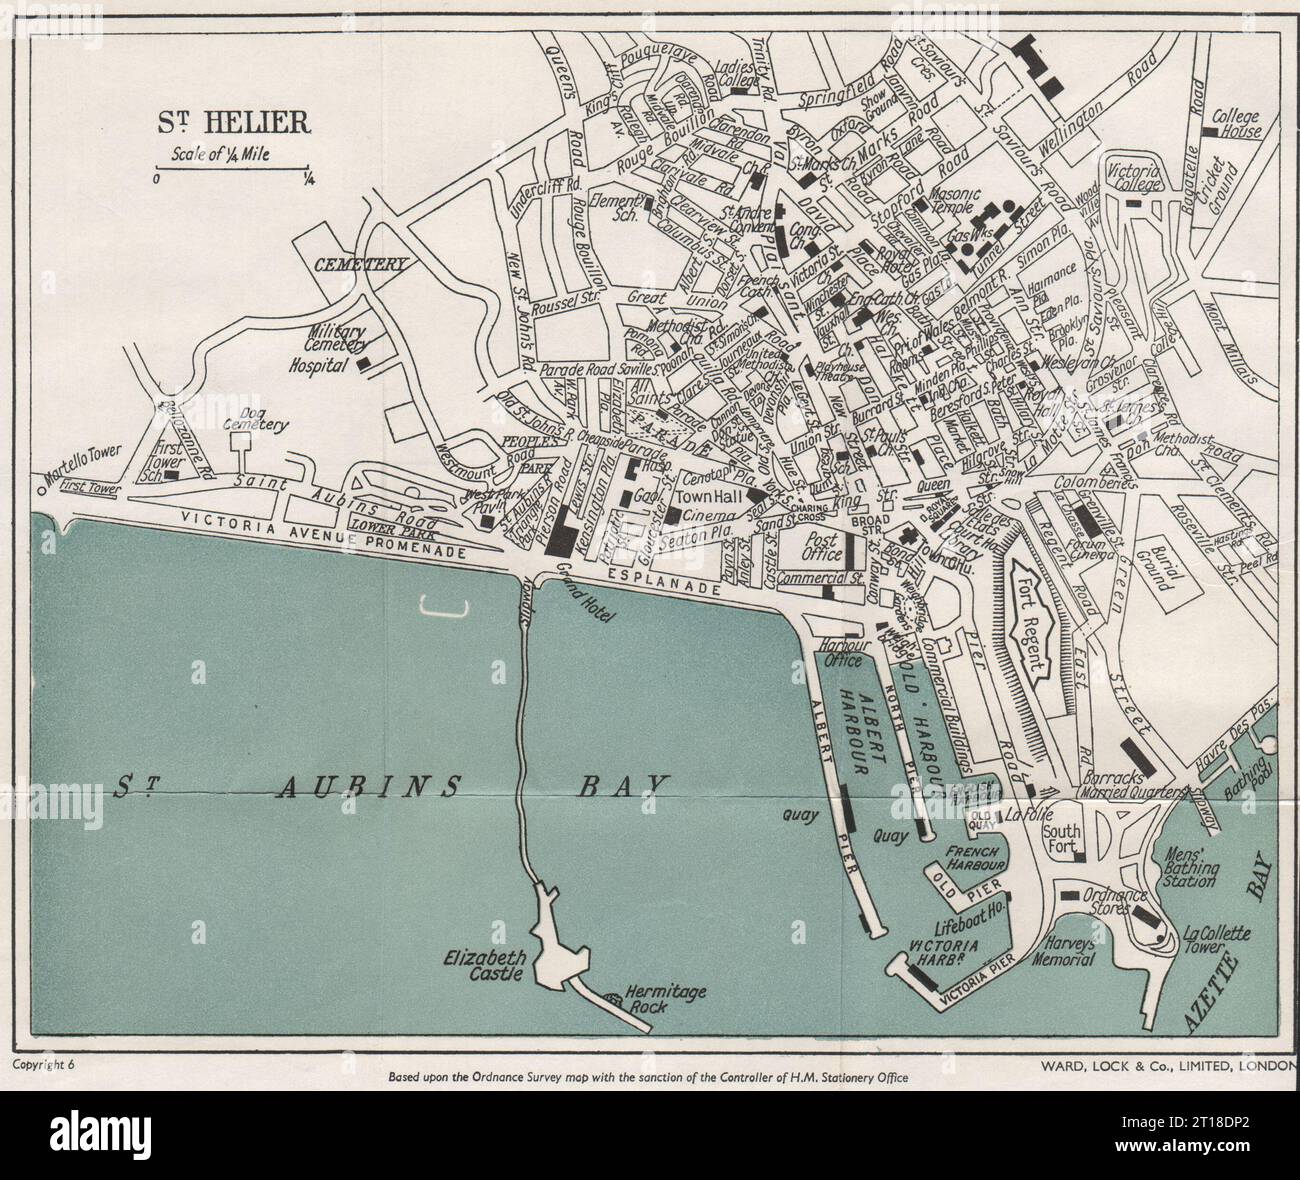 ST. HELIER vintage town/city plan. Jersey Channel Islands. WARD LOCK 1954 map Stock Photo